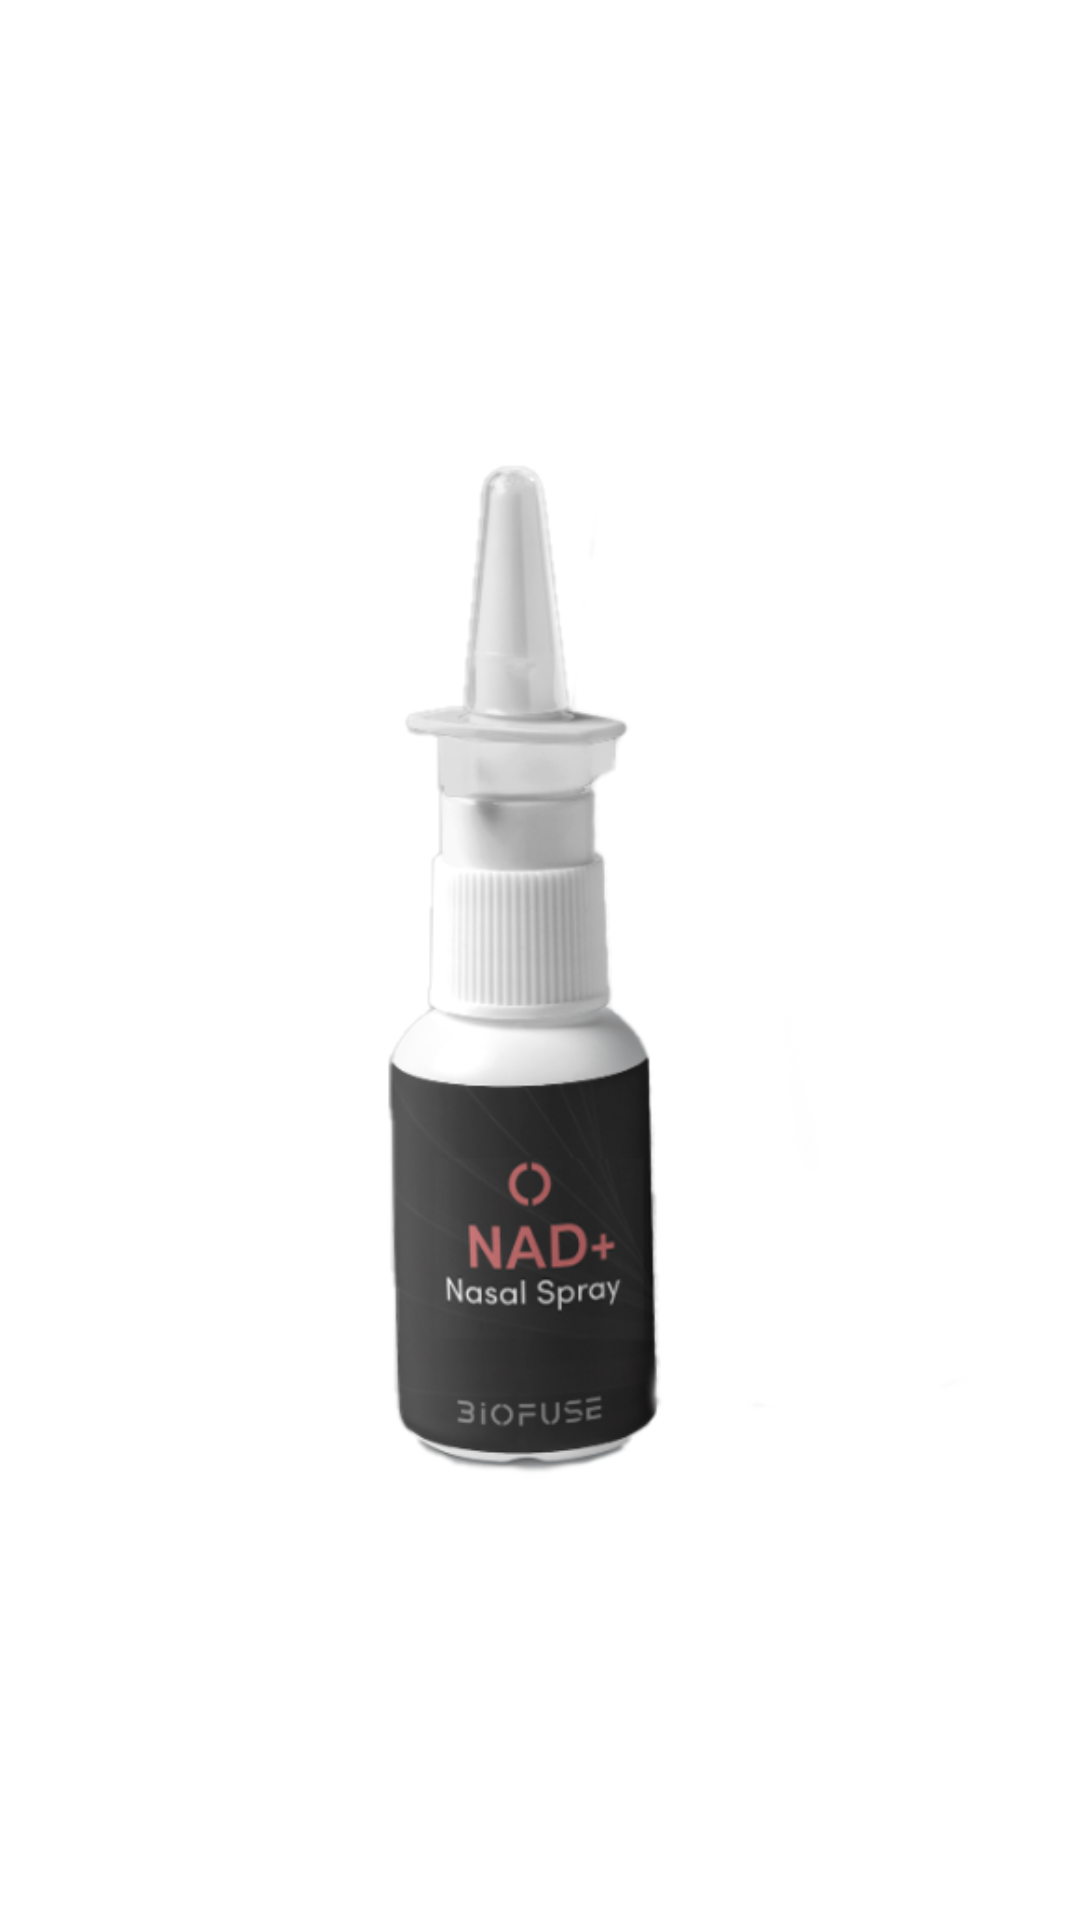 NAD nasal spray biofuse